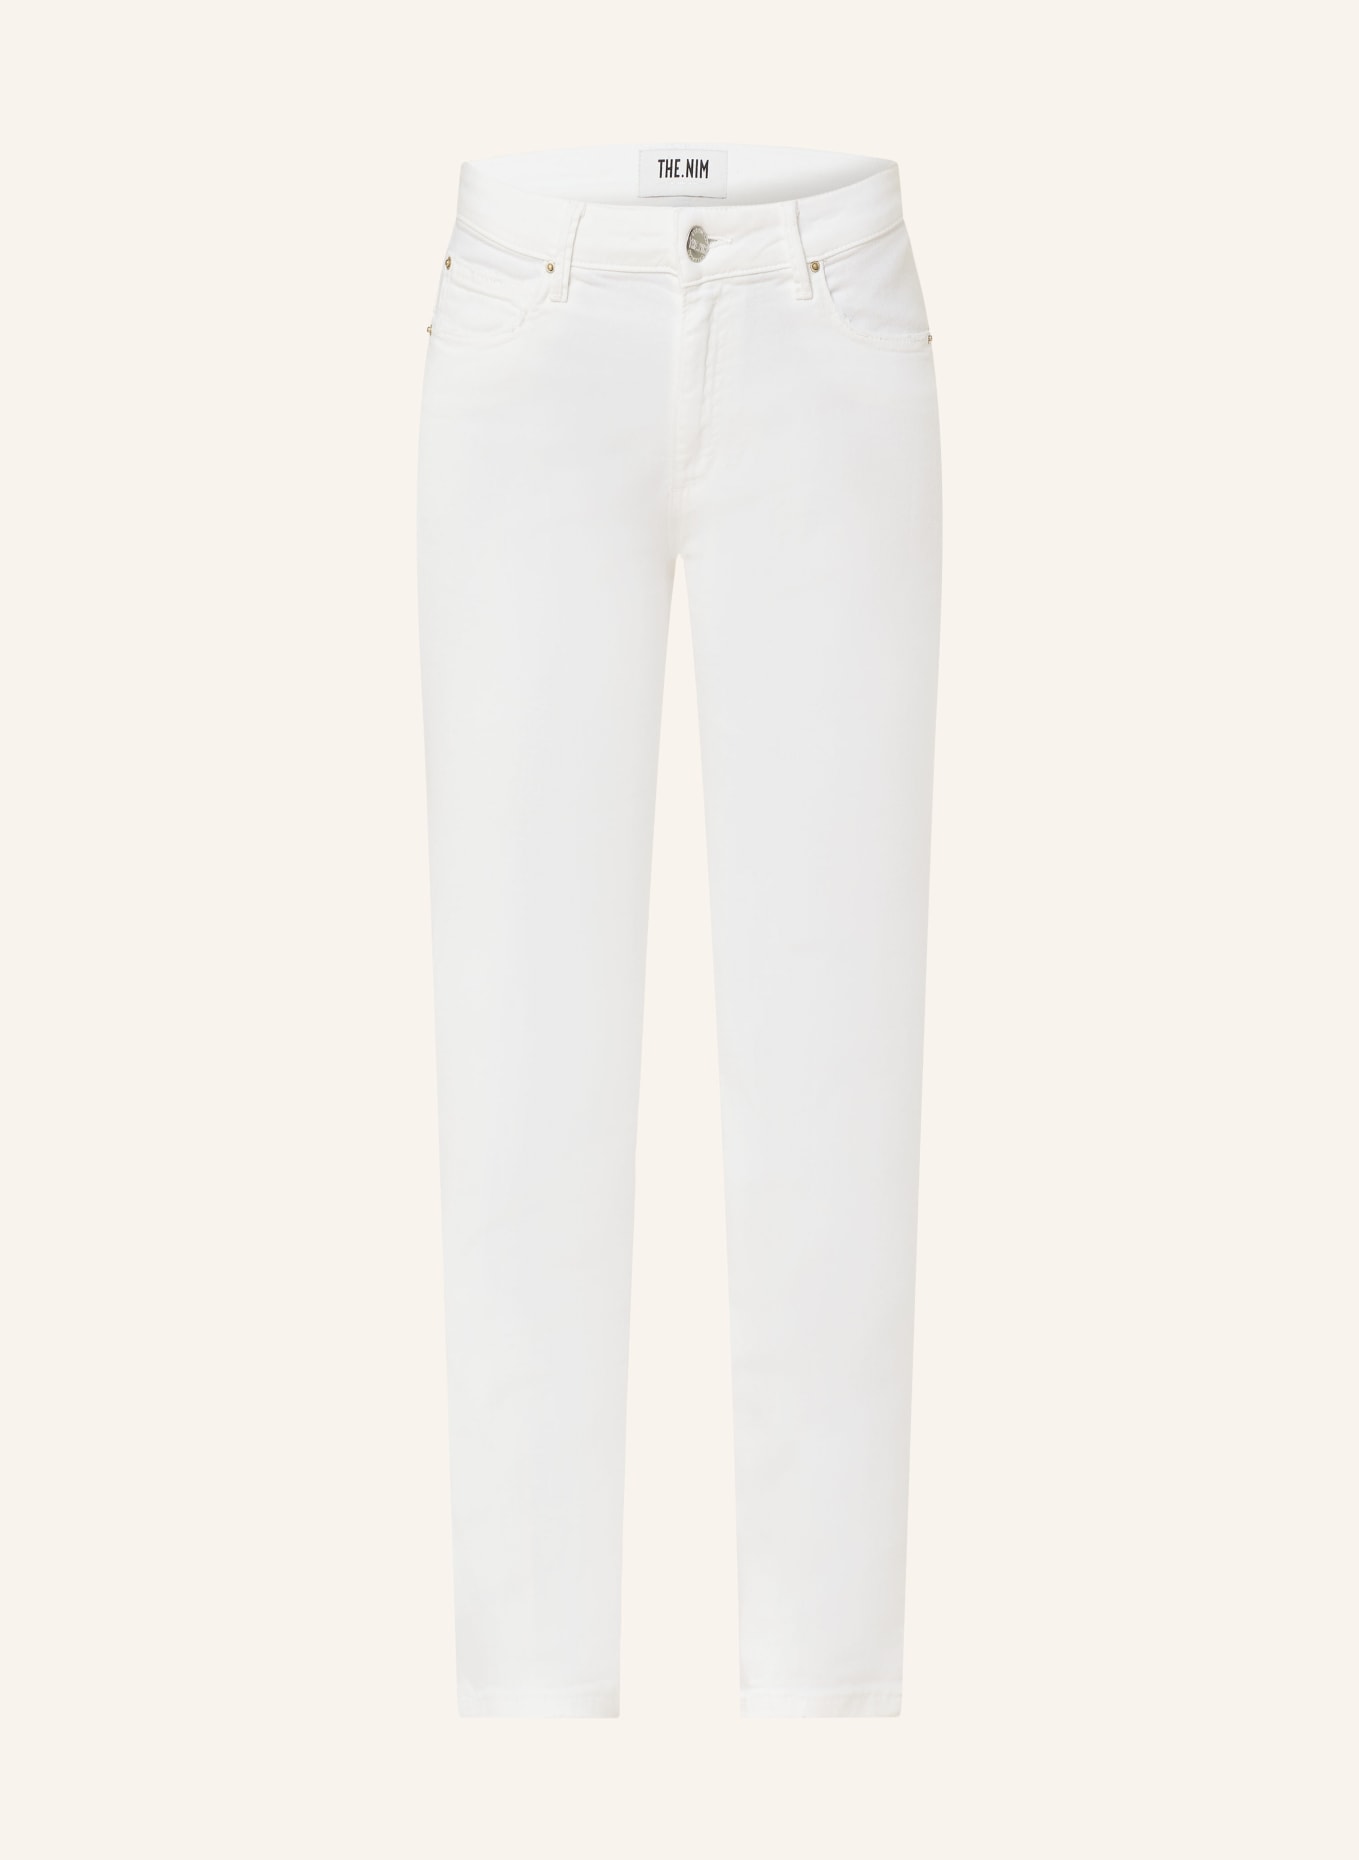 THE.NIM STANDARD Jeans BONNIE, Color: C001-WHT WHITE (Image 1)